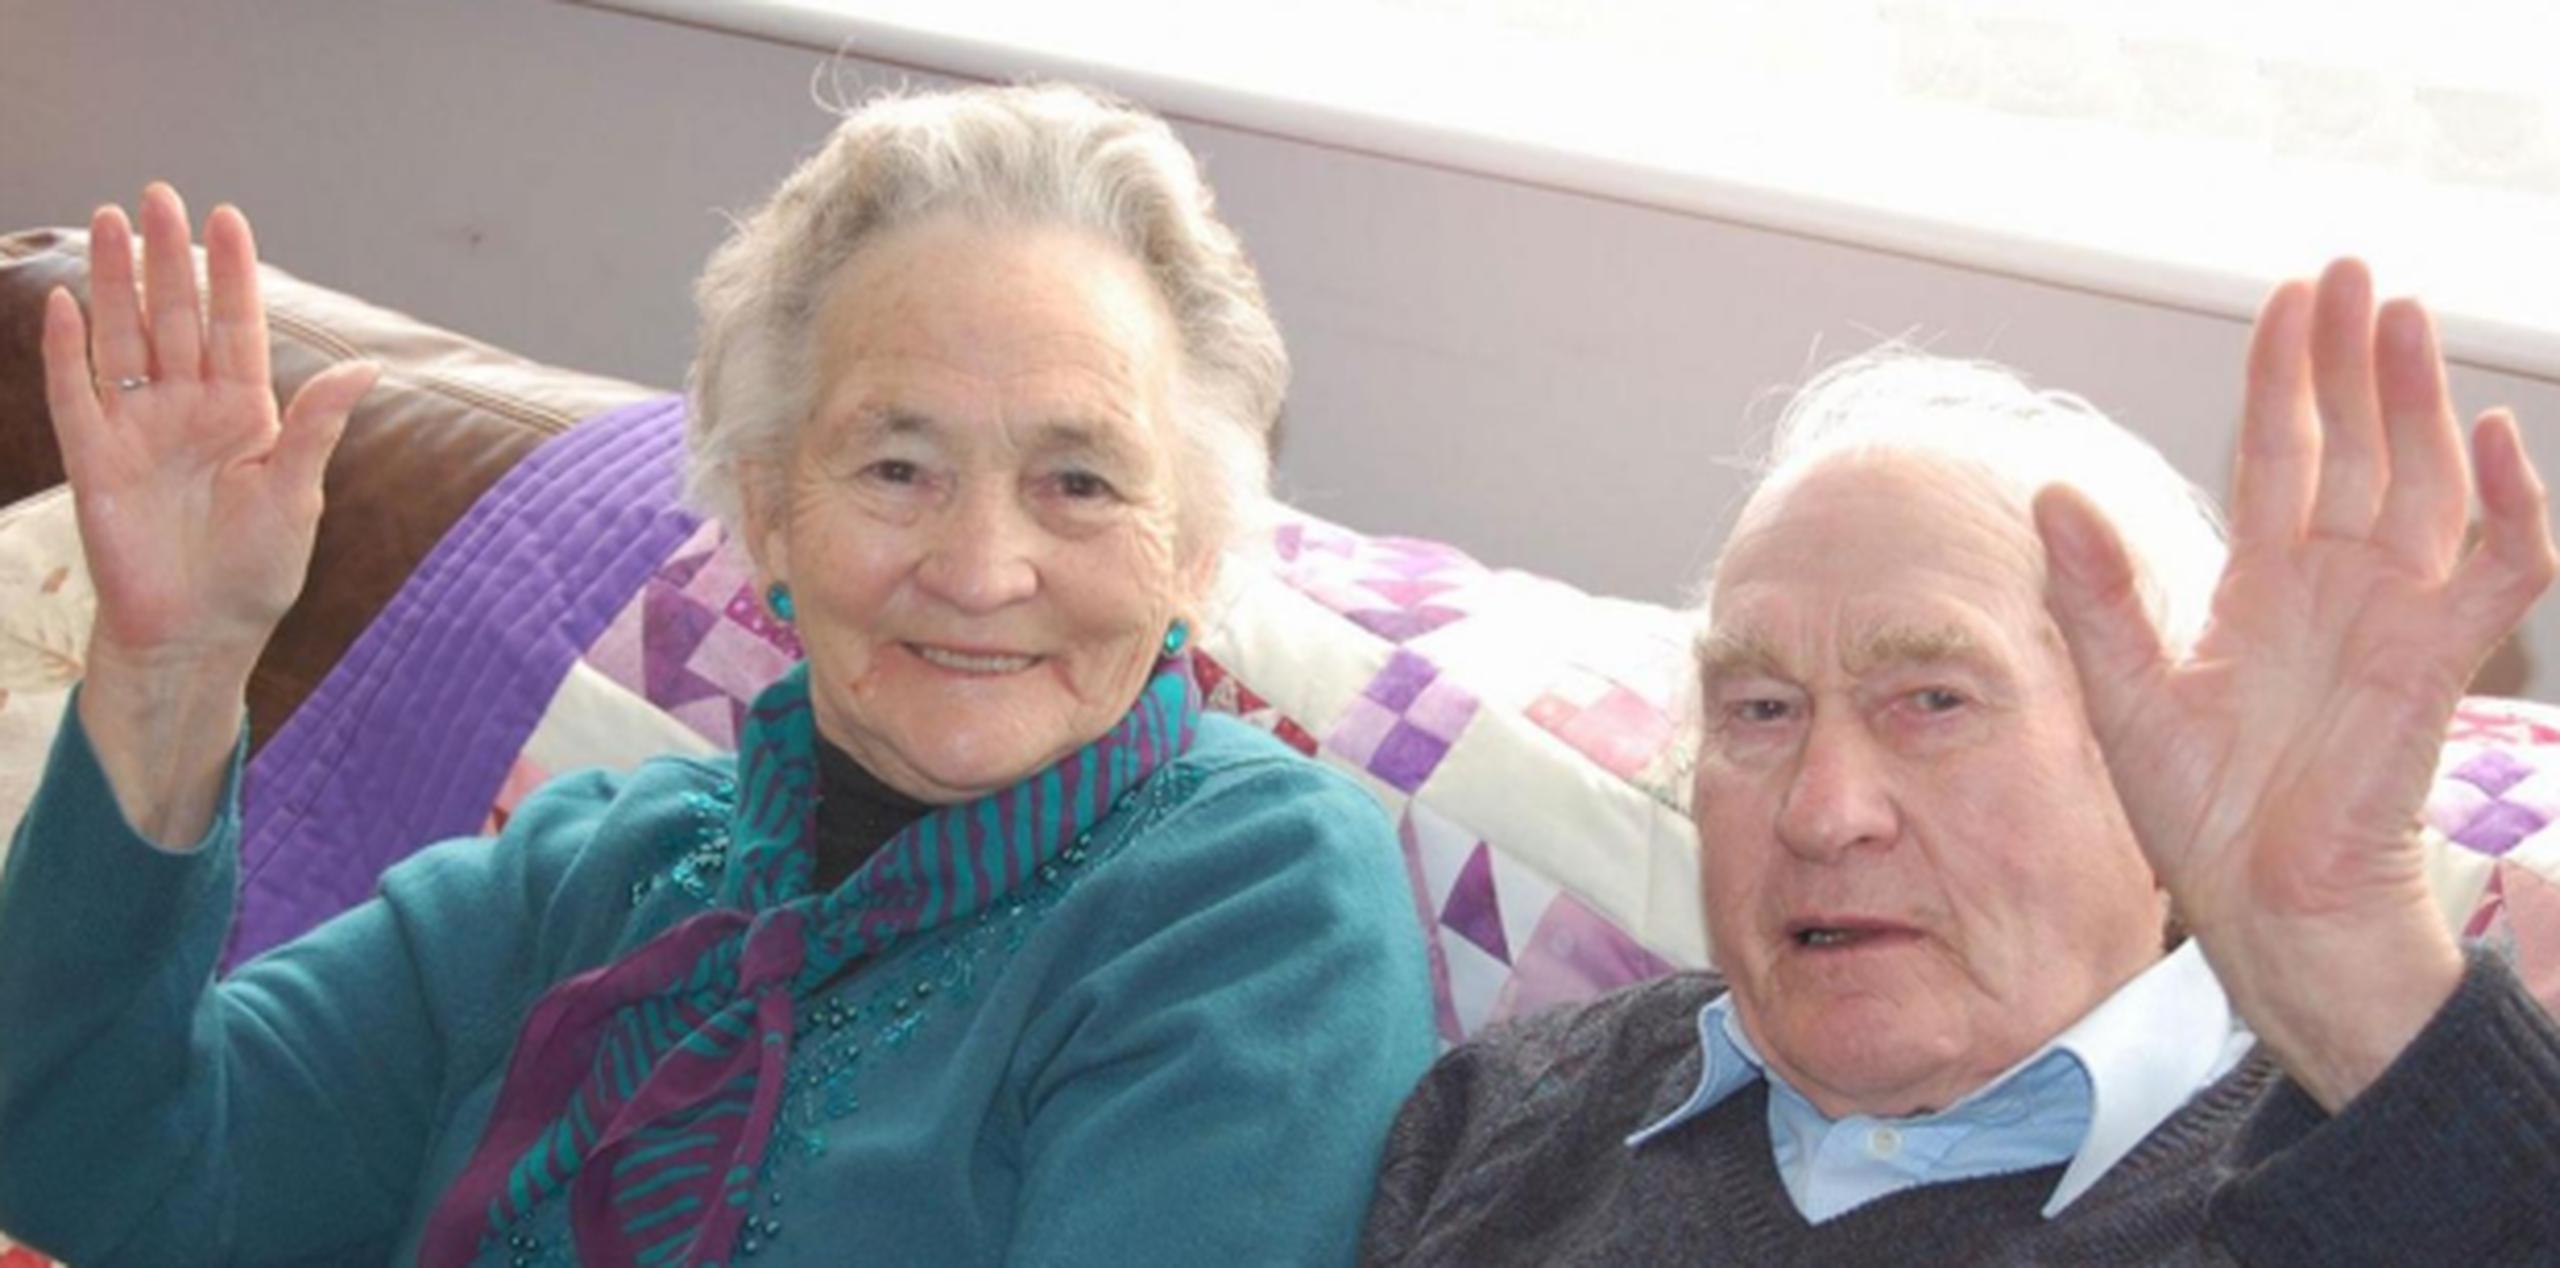 Cuando Wilf no reconoció su esposa debido a su demencia, la salud de Vera comenzó a deteriorarse. (Facebook)